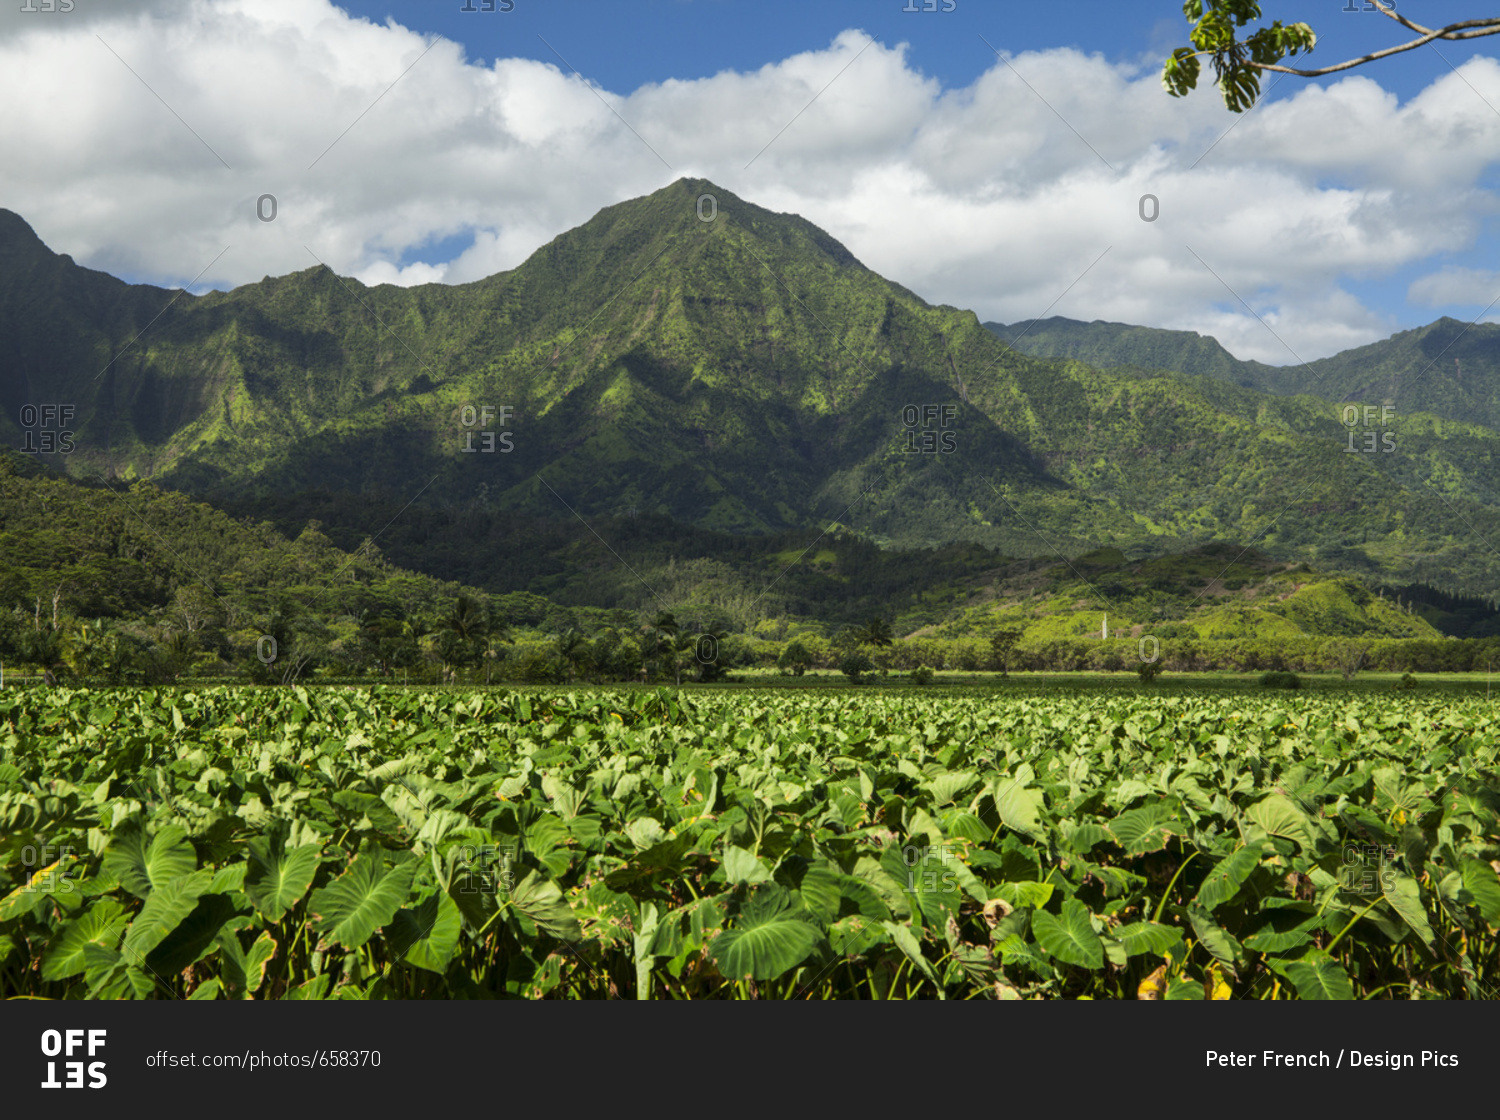 Taro patches, Hanalei National Wildlife Refuge, Hanalei Valley; Hanalei, Kauai, Hawaii, United States of America